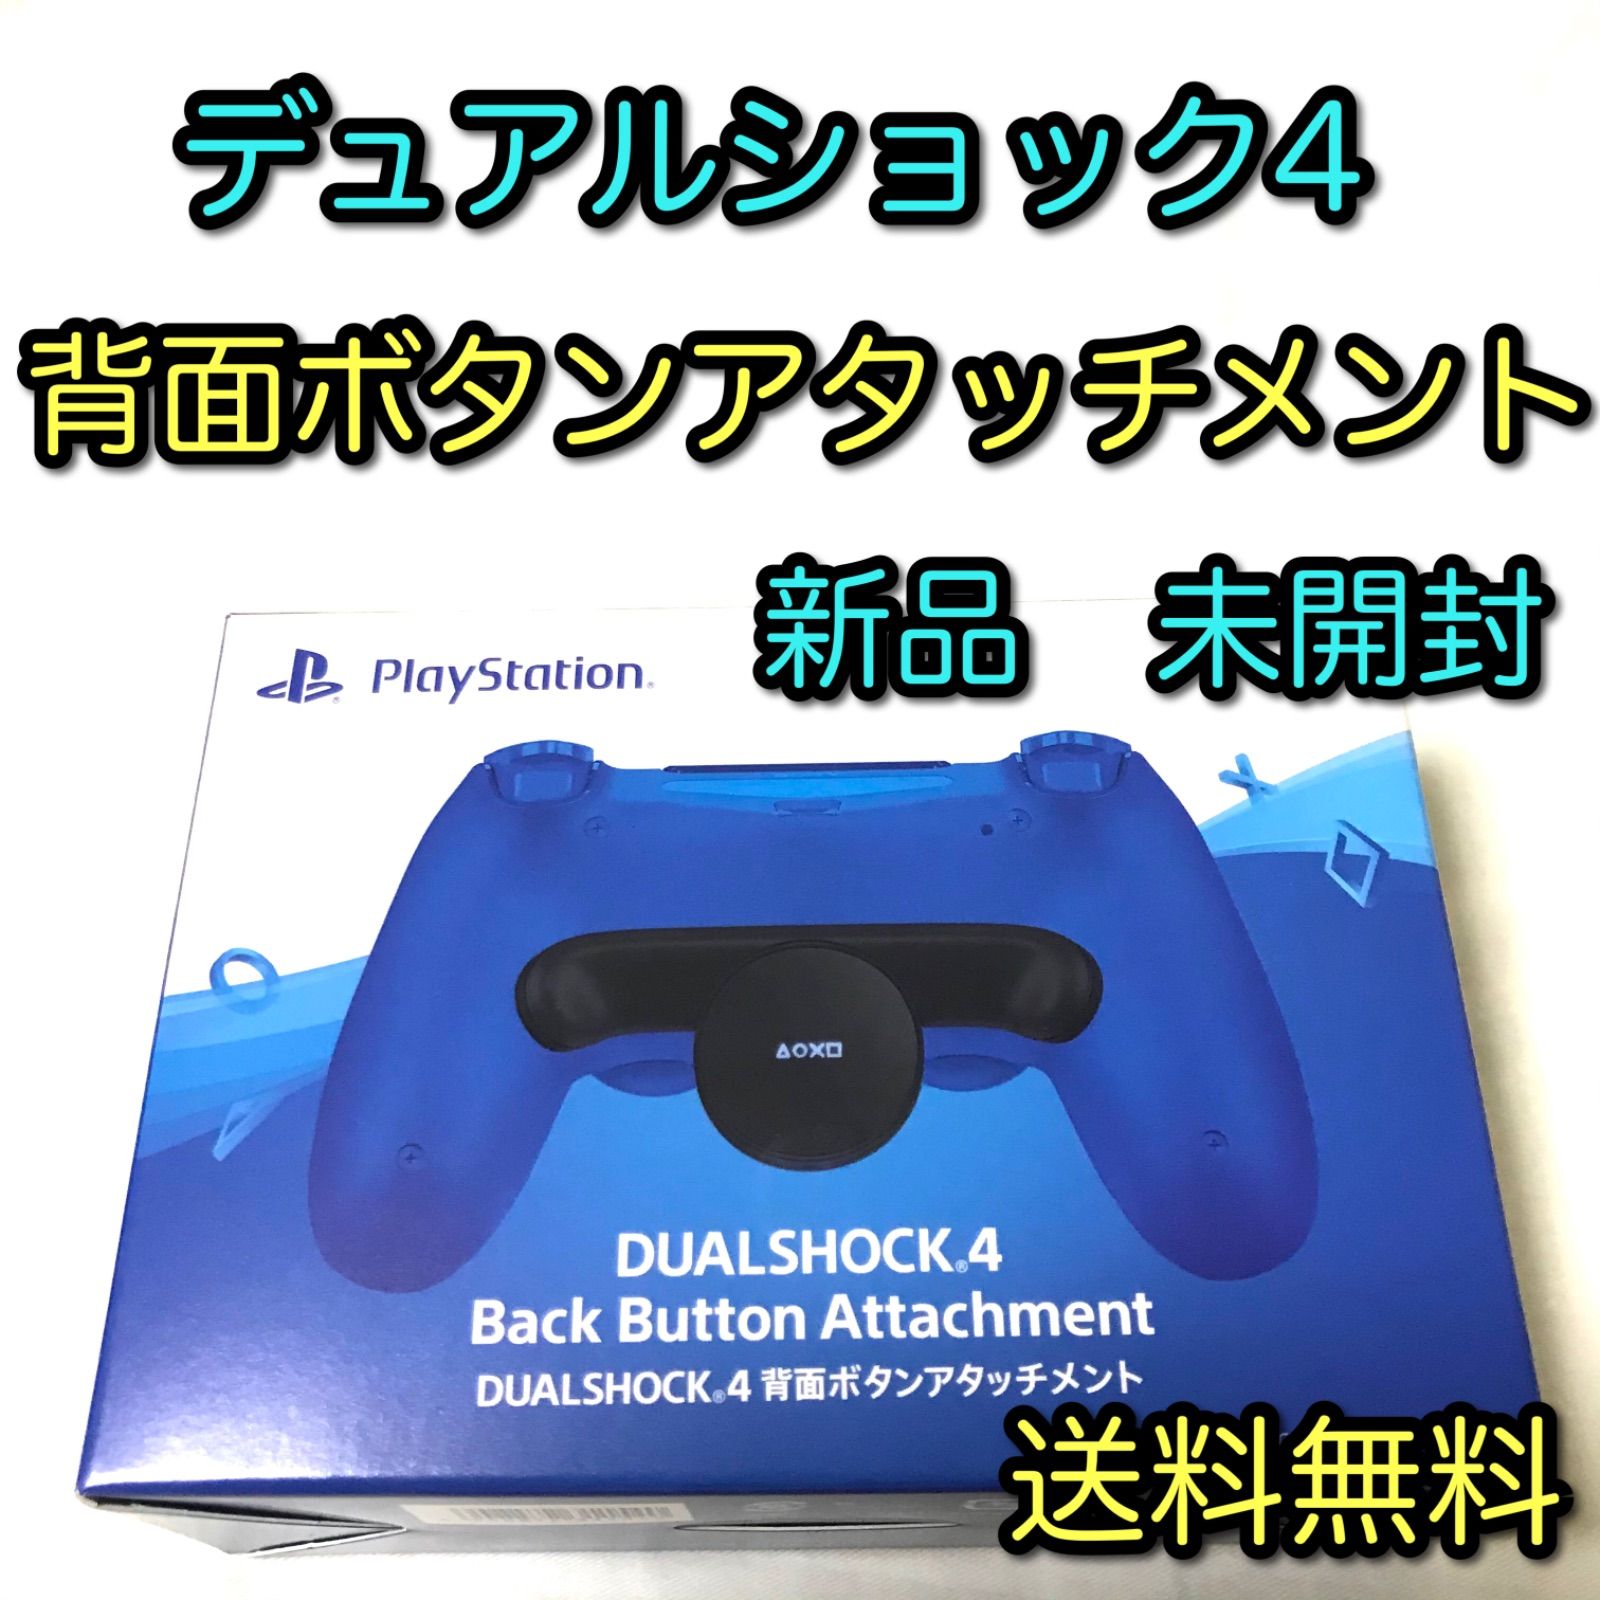 純正品 背面 ボタン アタッチメント DUAL SHOCK 4 PS4 プレステ4 